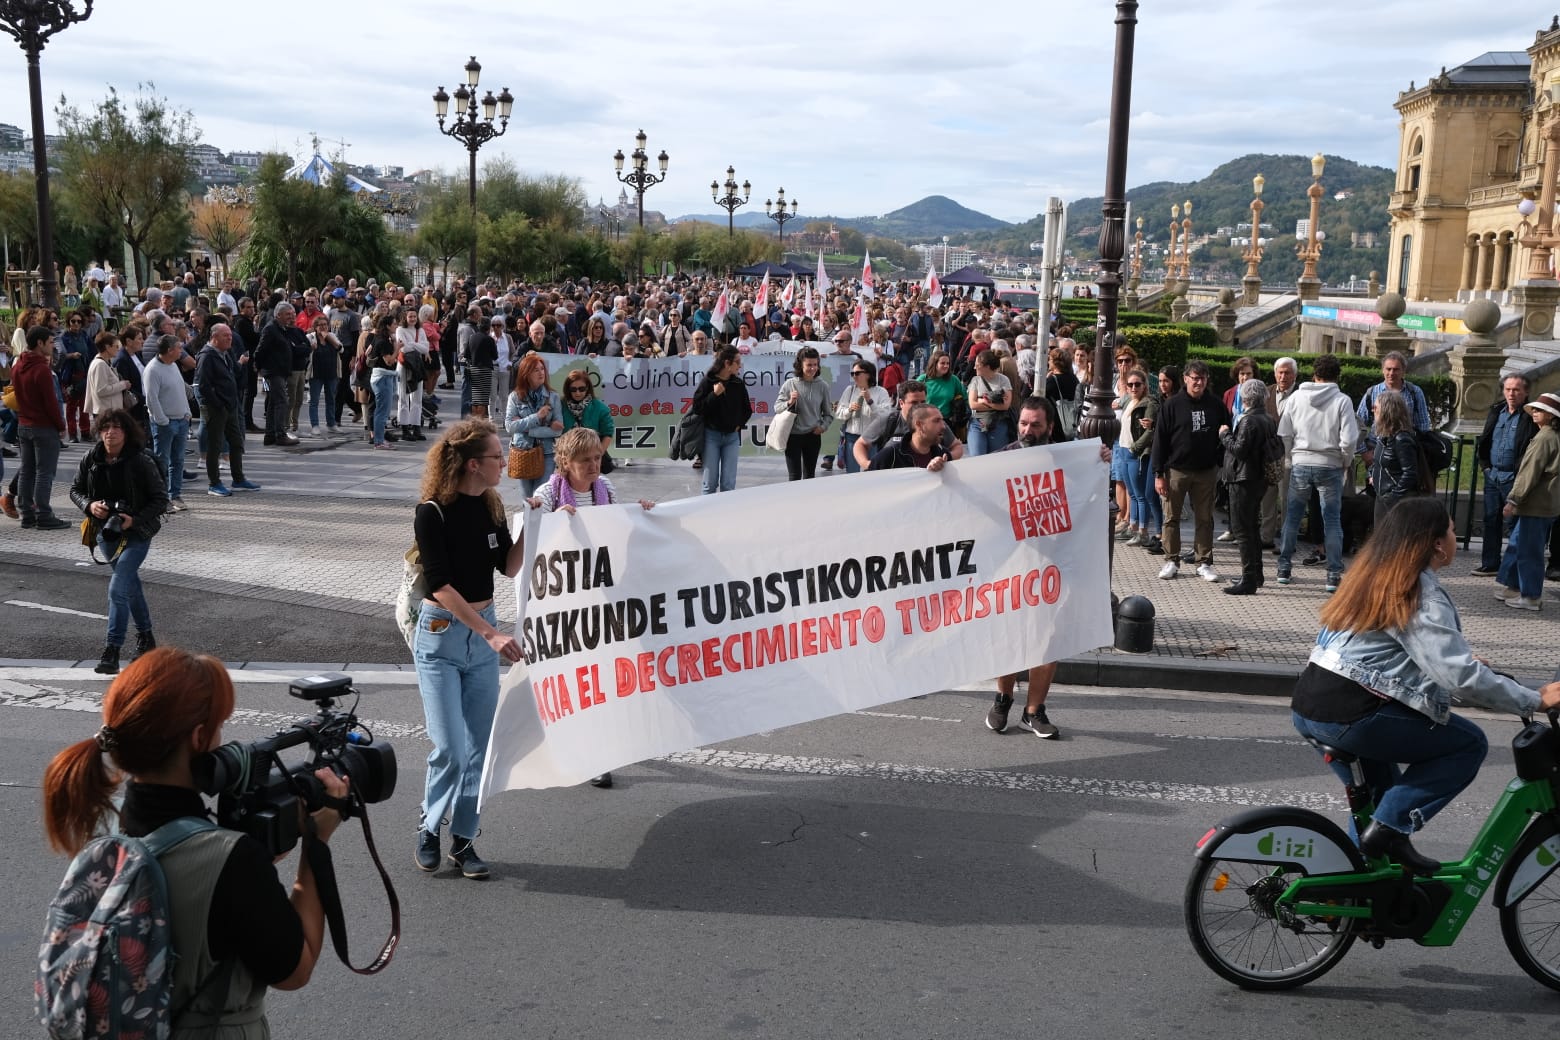 38967296 ed05 42eb 8be7 ce170258bbd4 - "Hay que reducir la promoción turística de Donostia a cero", pide la marcha contra la turistificación